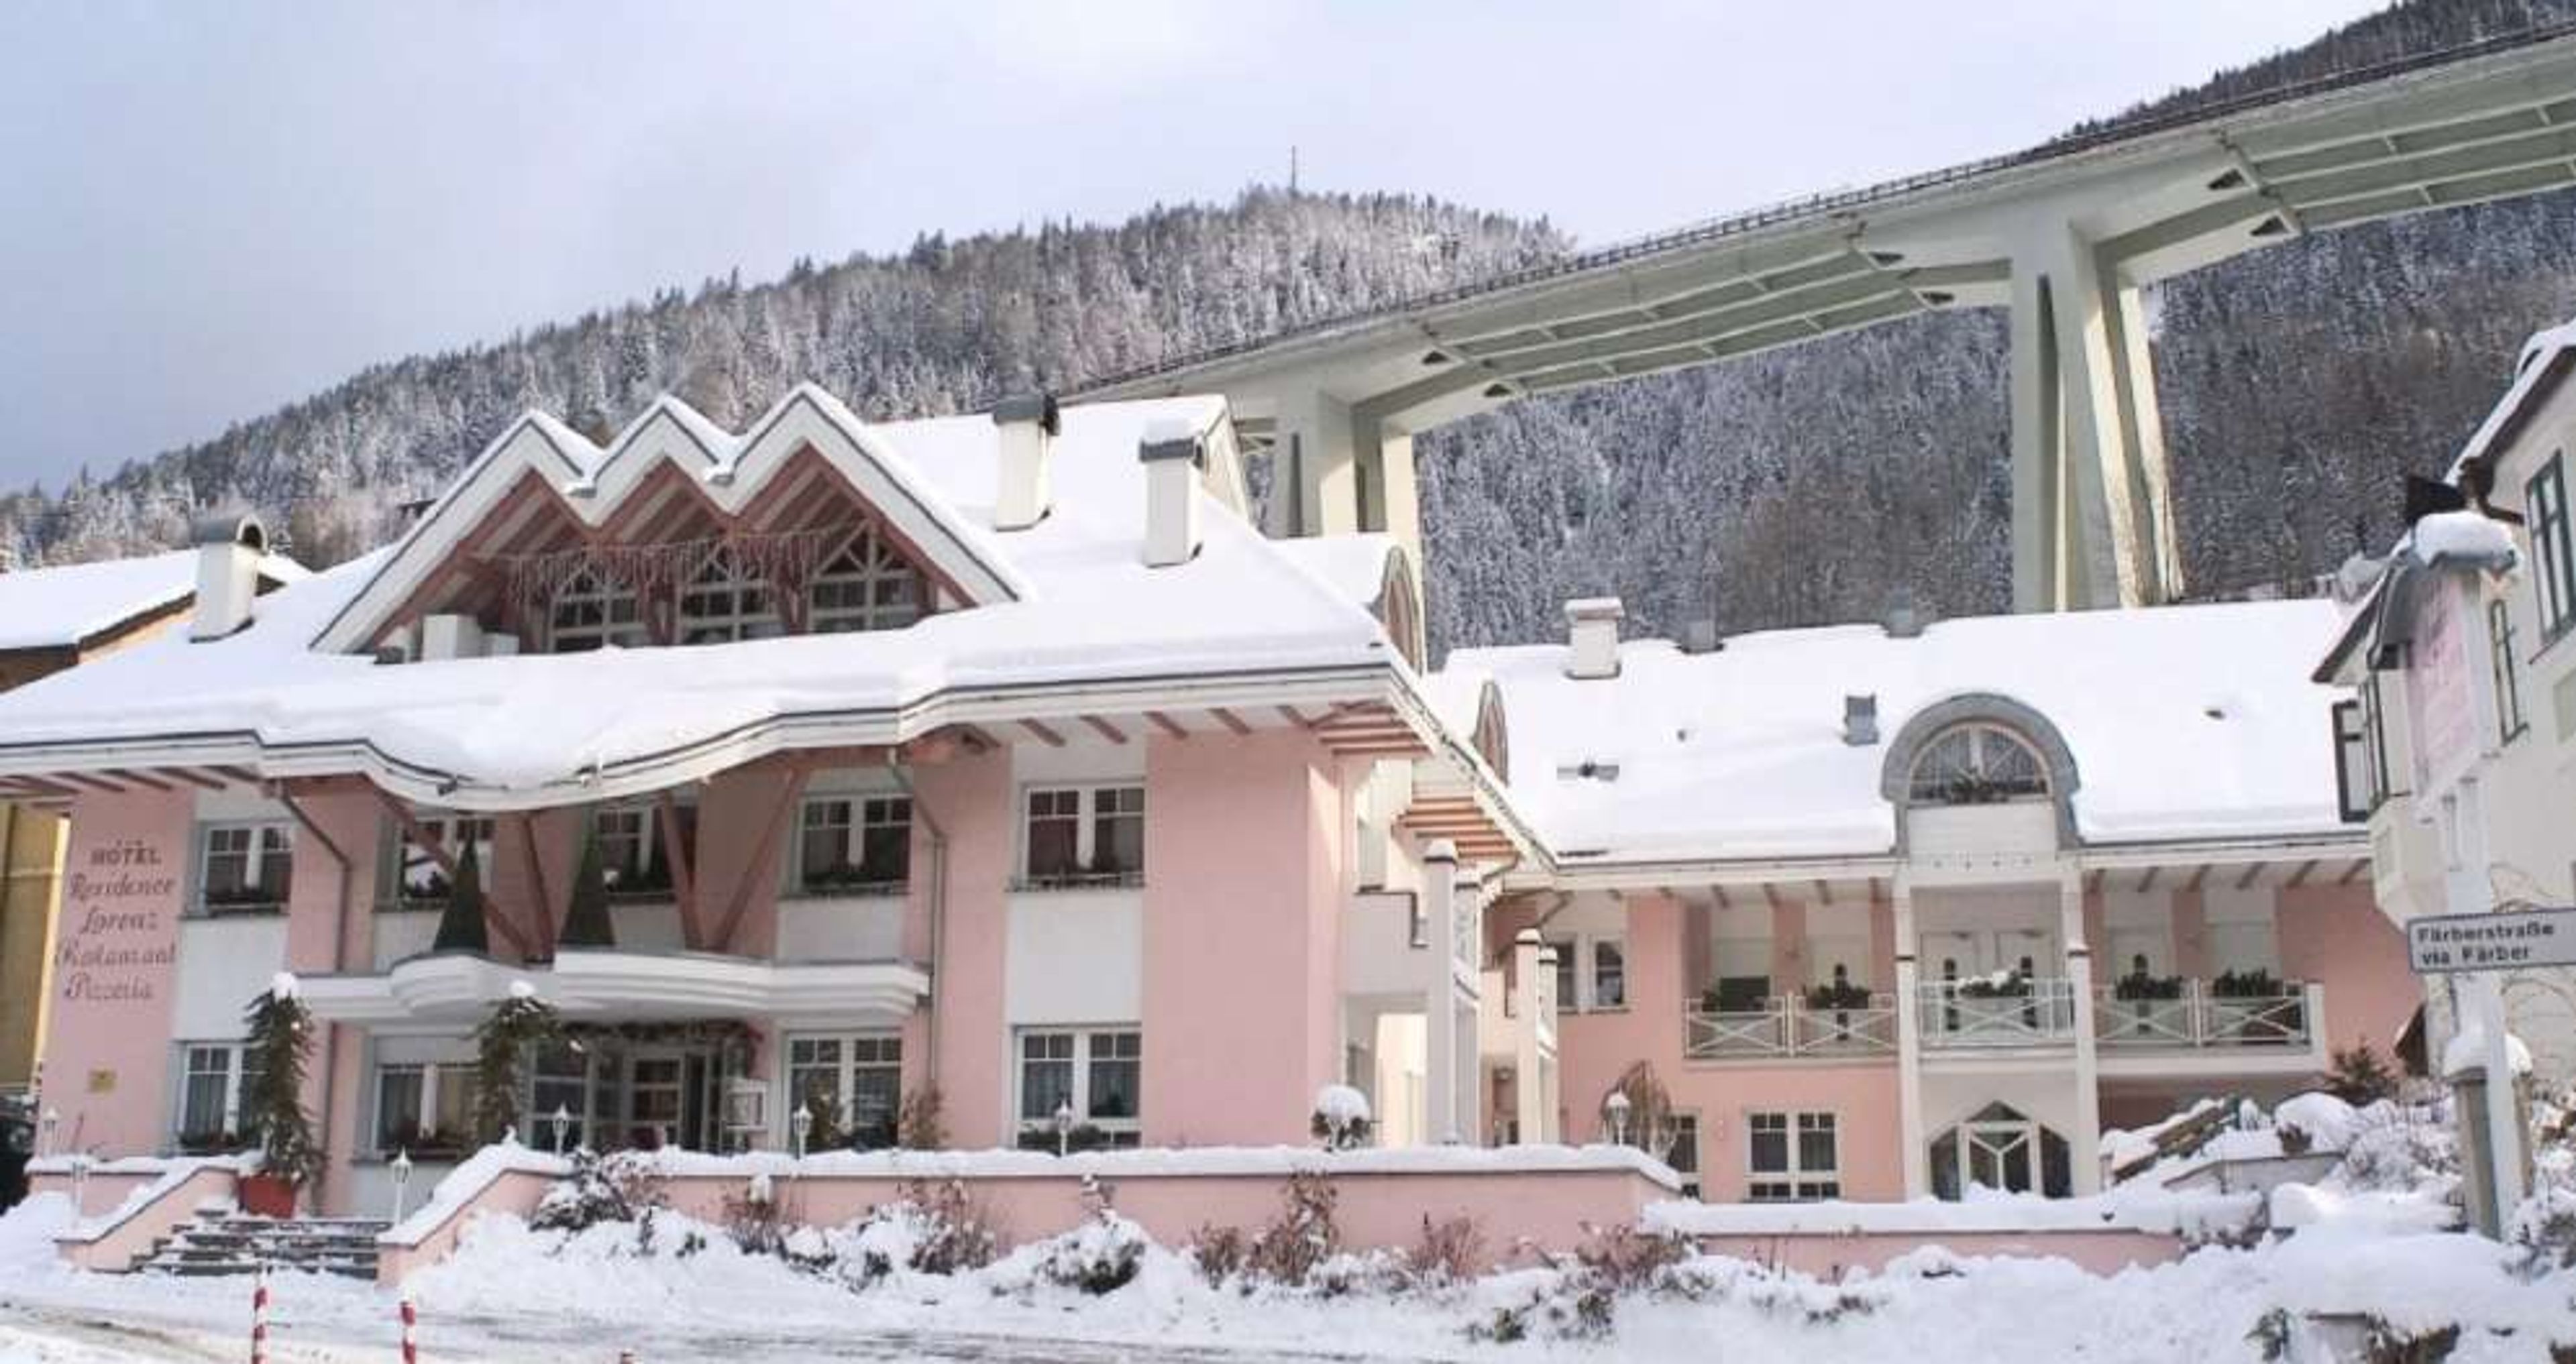 Hotel Lorenz winter